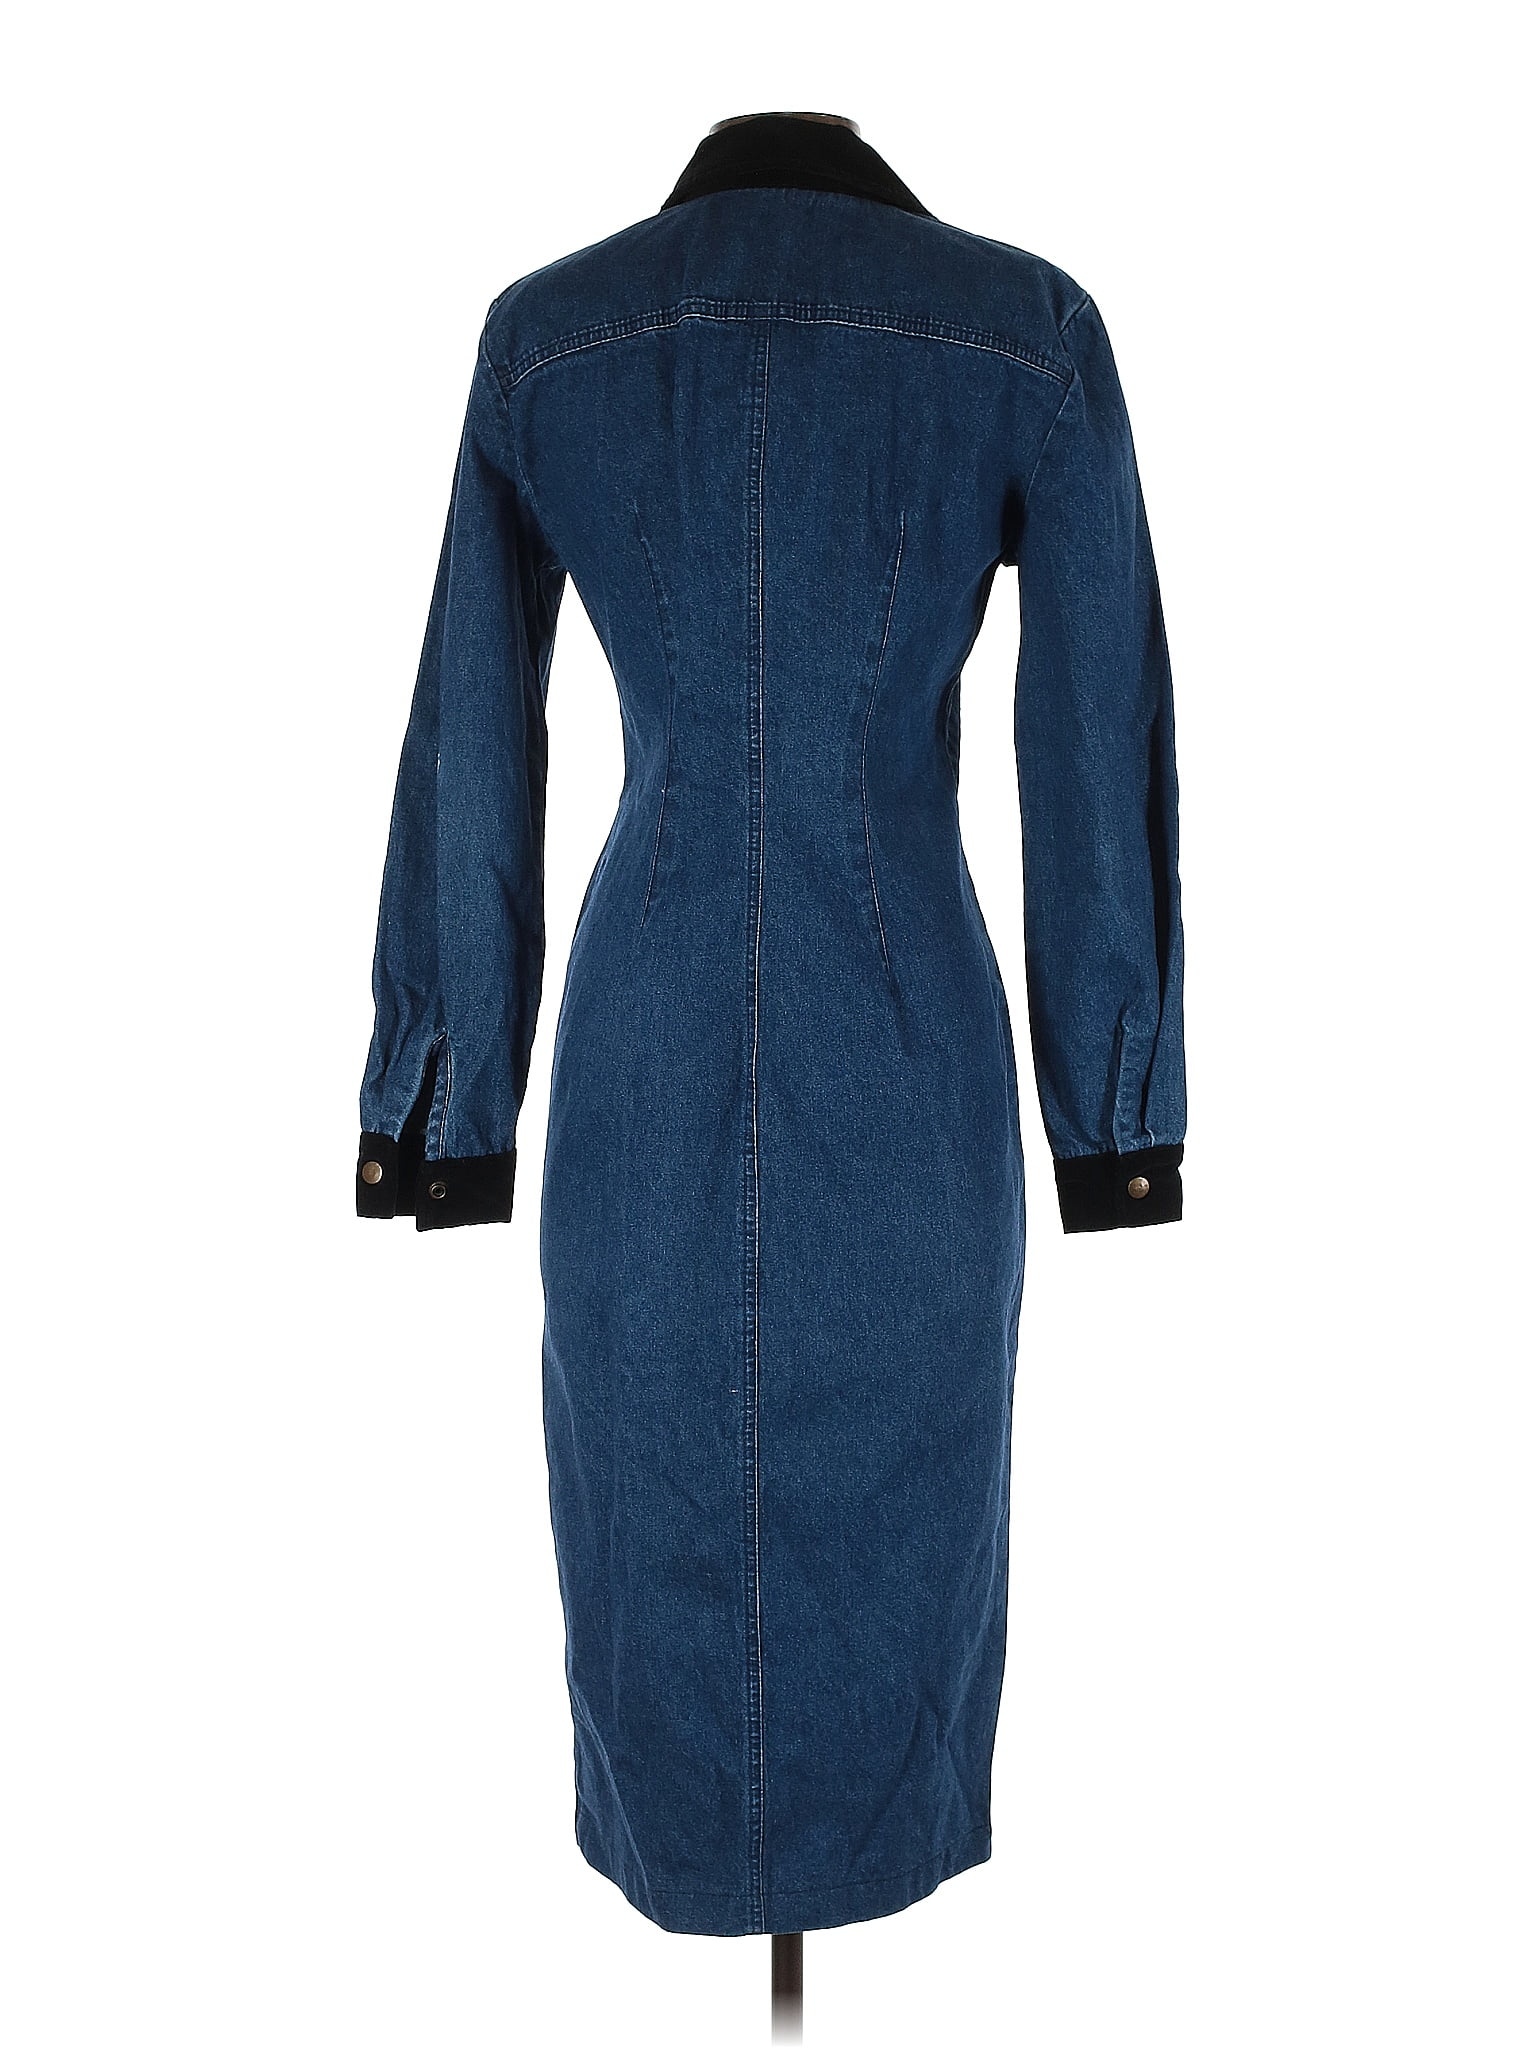 Paris Sport Club 100% Cotton Solid Blue Casual Dress Size 7 - 55